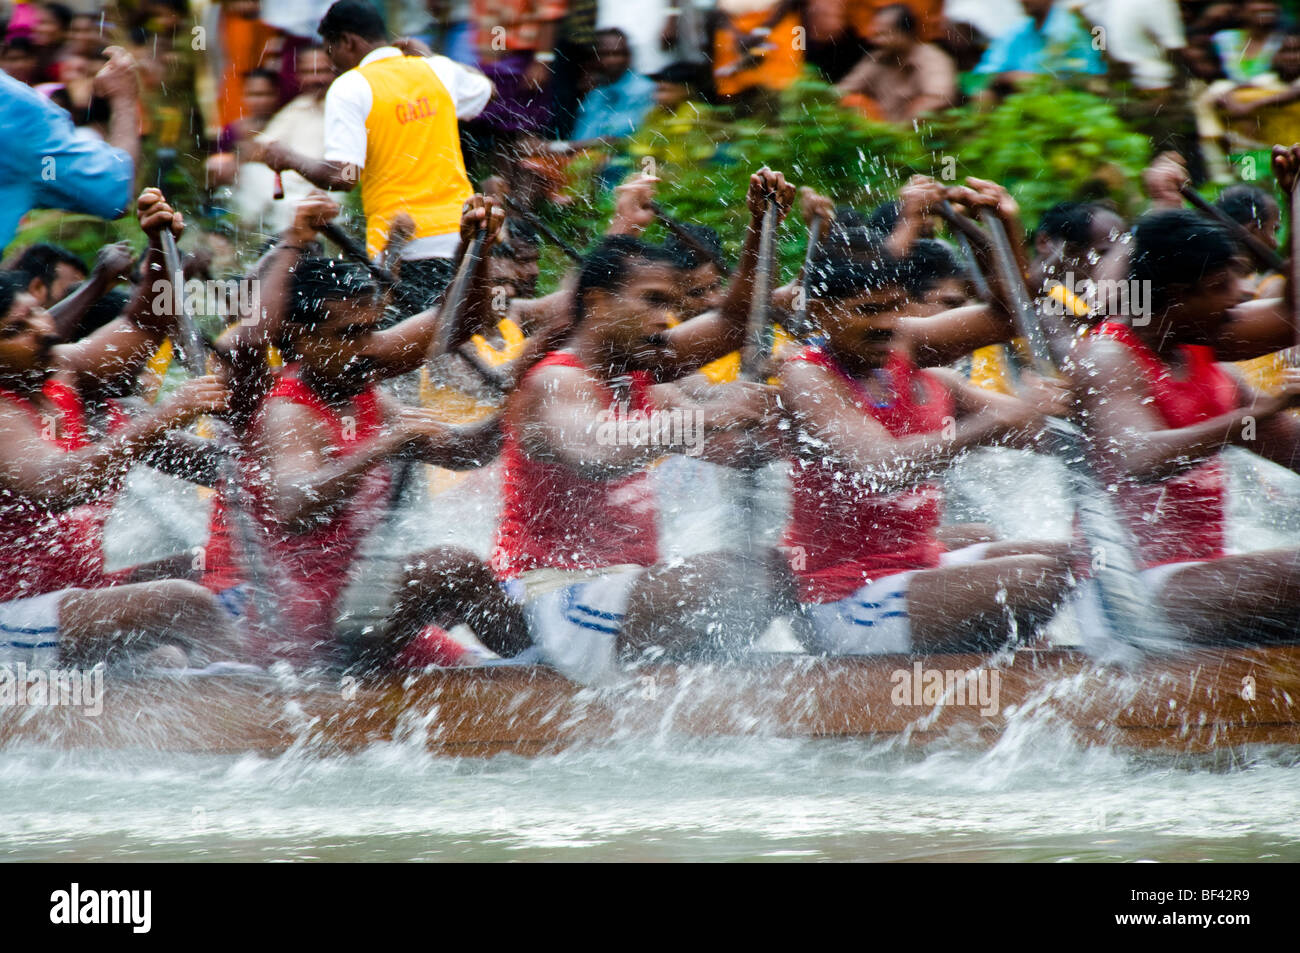 Snake Boat race during onam celebrations in Kerala, India Stock Photo